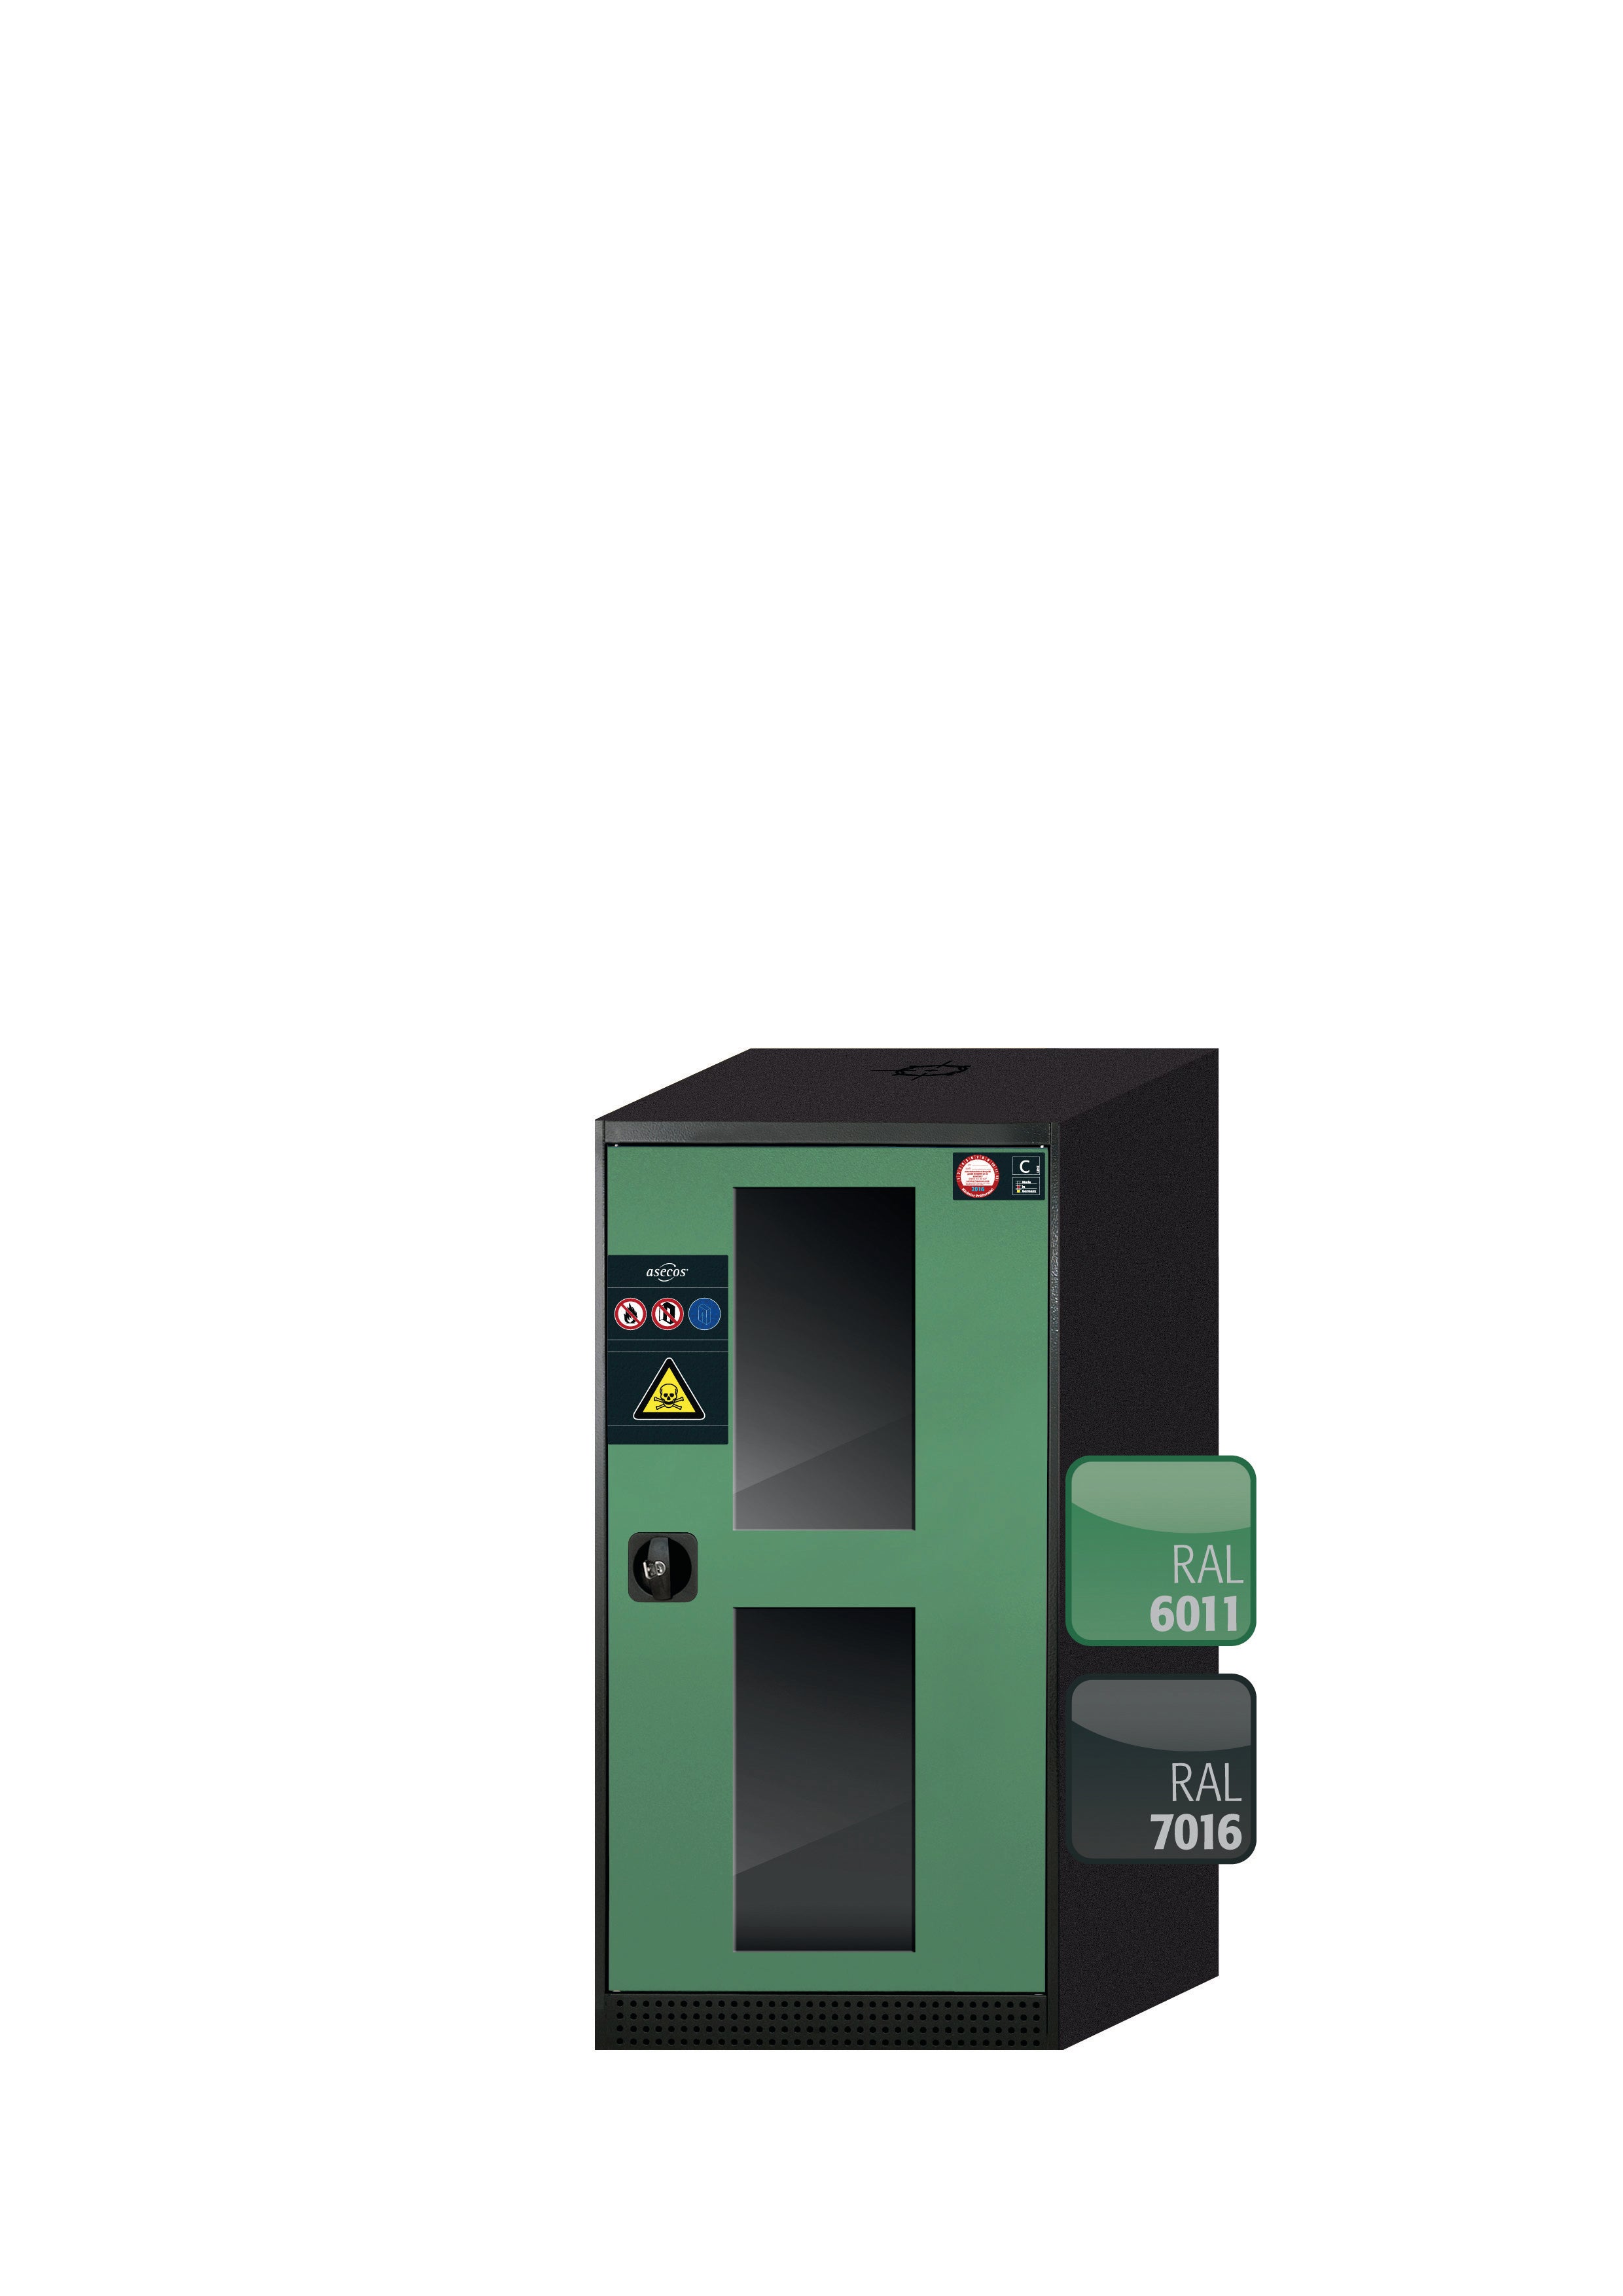 Armoire chimique CS-CLASSIC-G modèle CS.110.054.WDFWR en vert réséda RAL 6011 avec 3 tiroirs coulissants pour étagères AbZ (tôle d'acier/polypropylène)